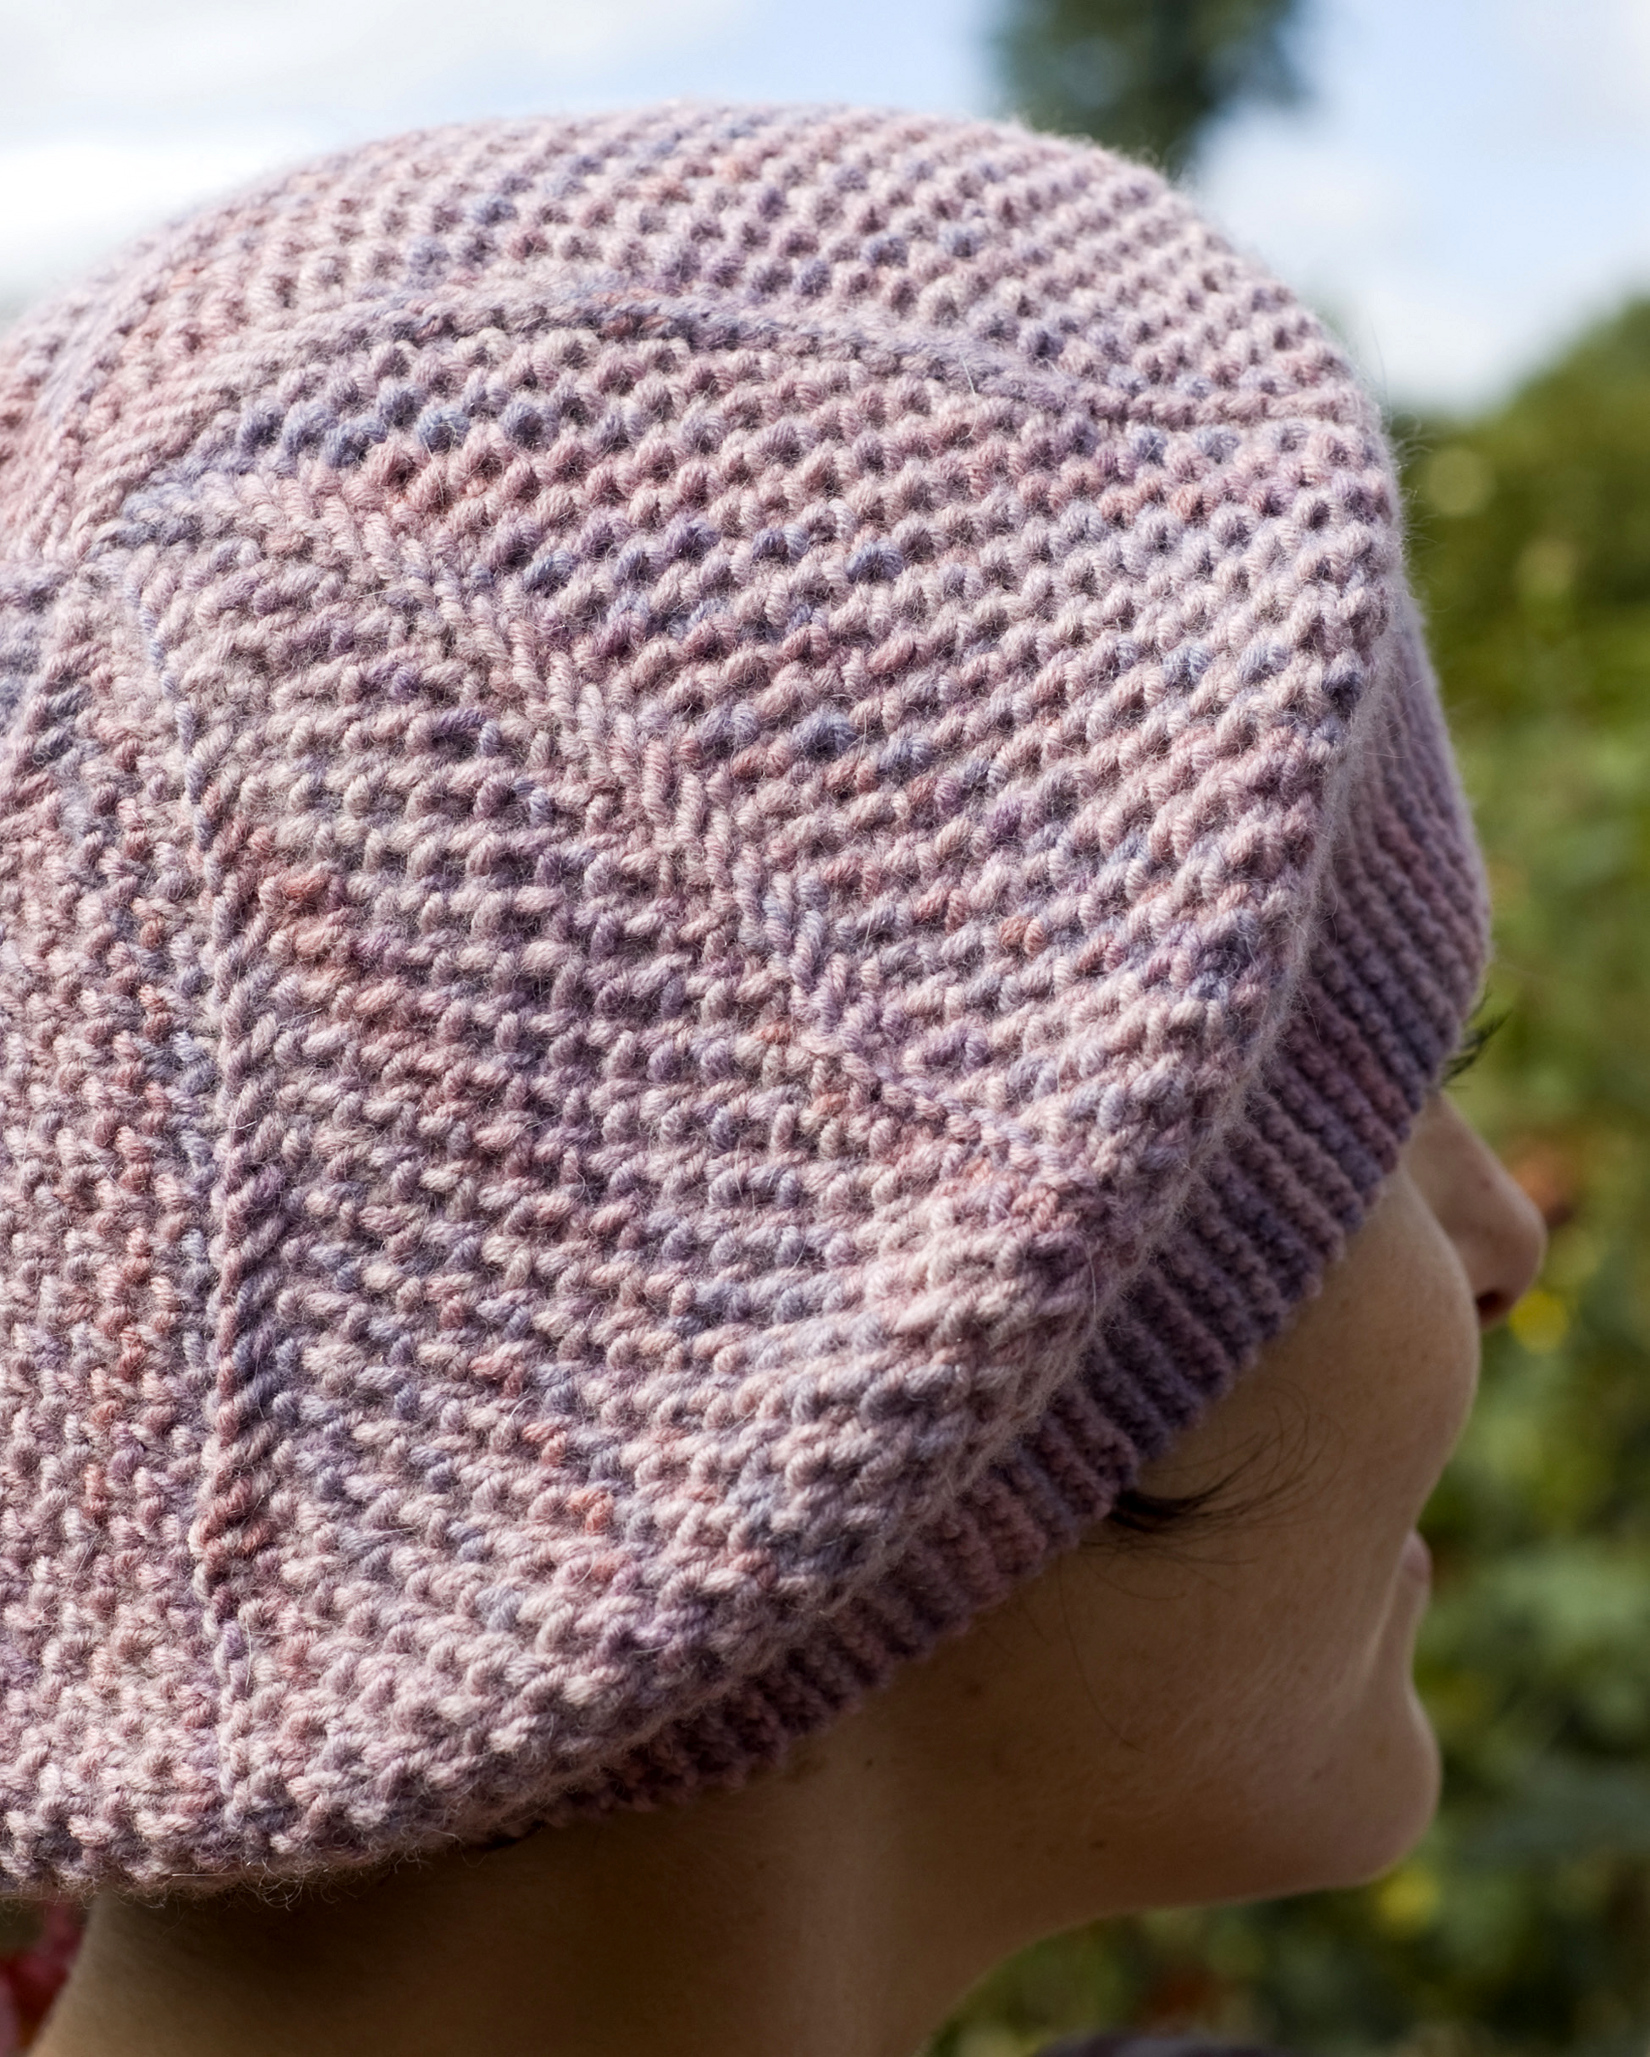 Curlicue sideways knit brioche beret pattern